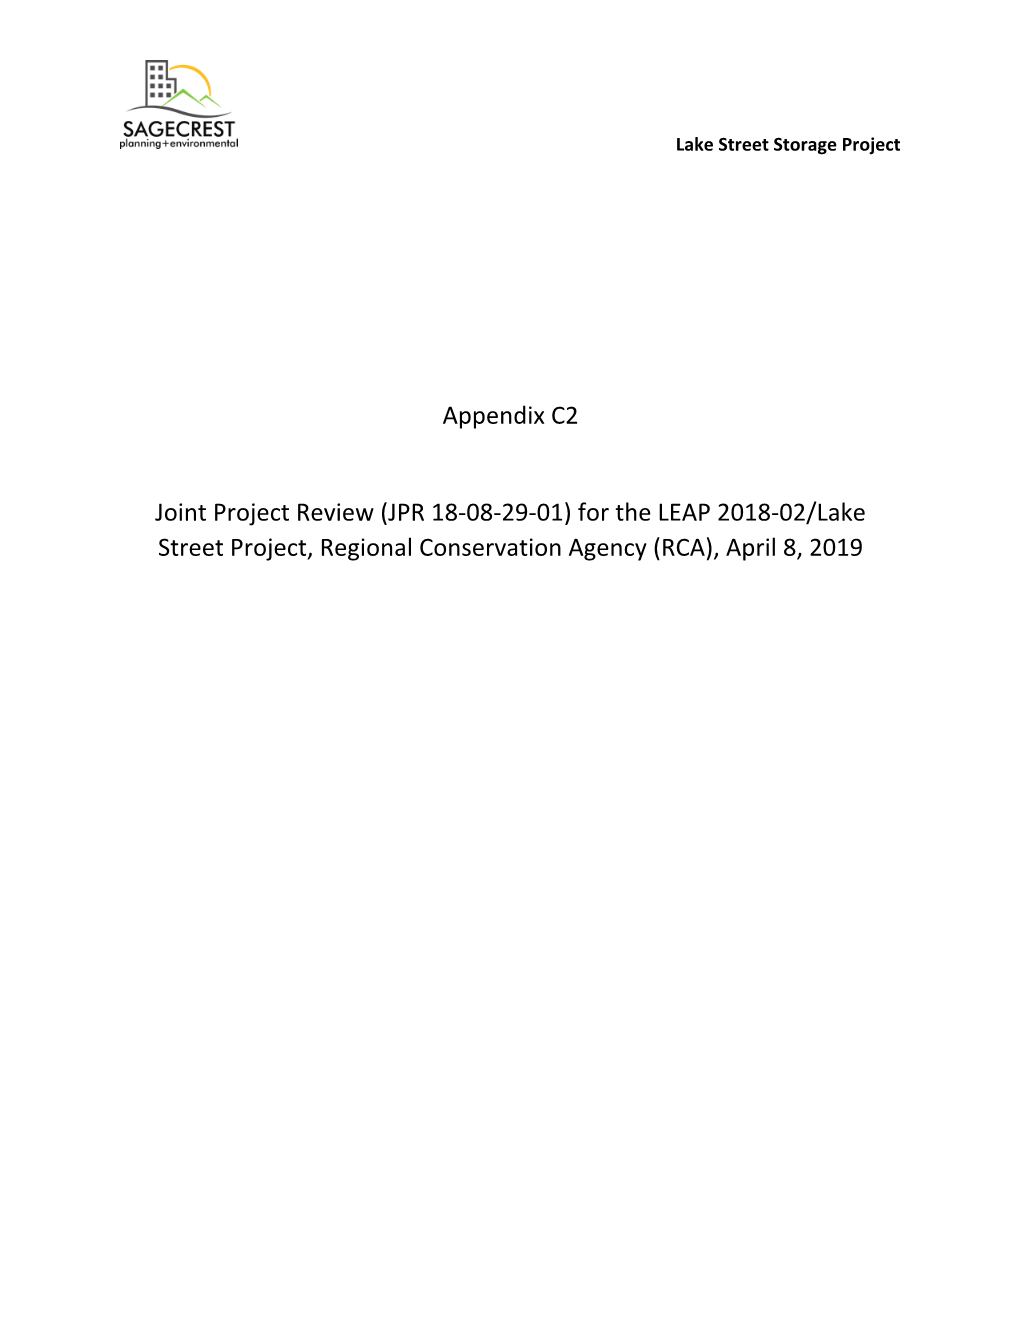 Appendix C2 Joint Project Review